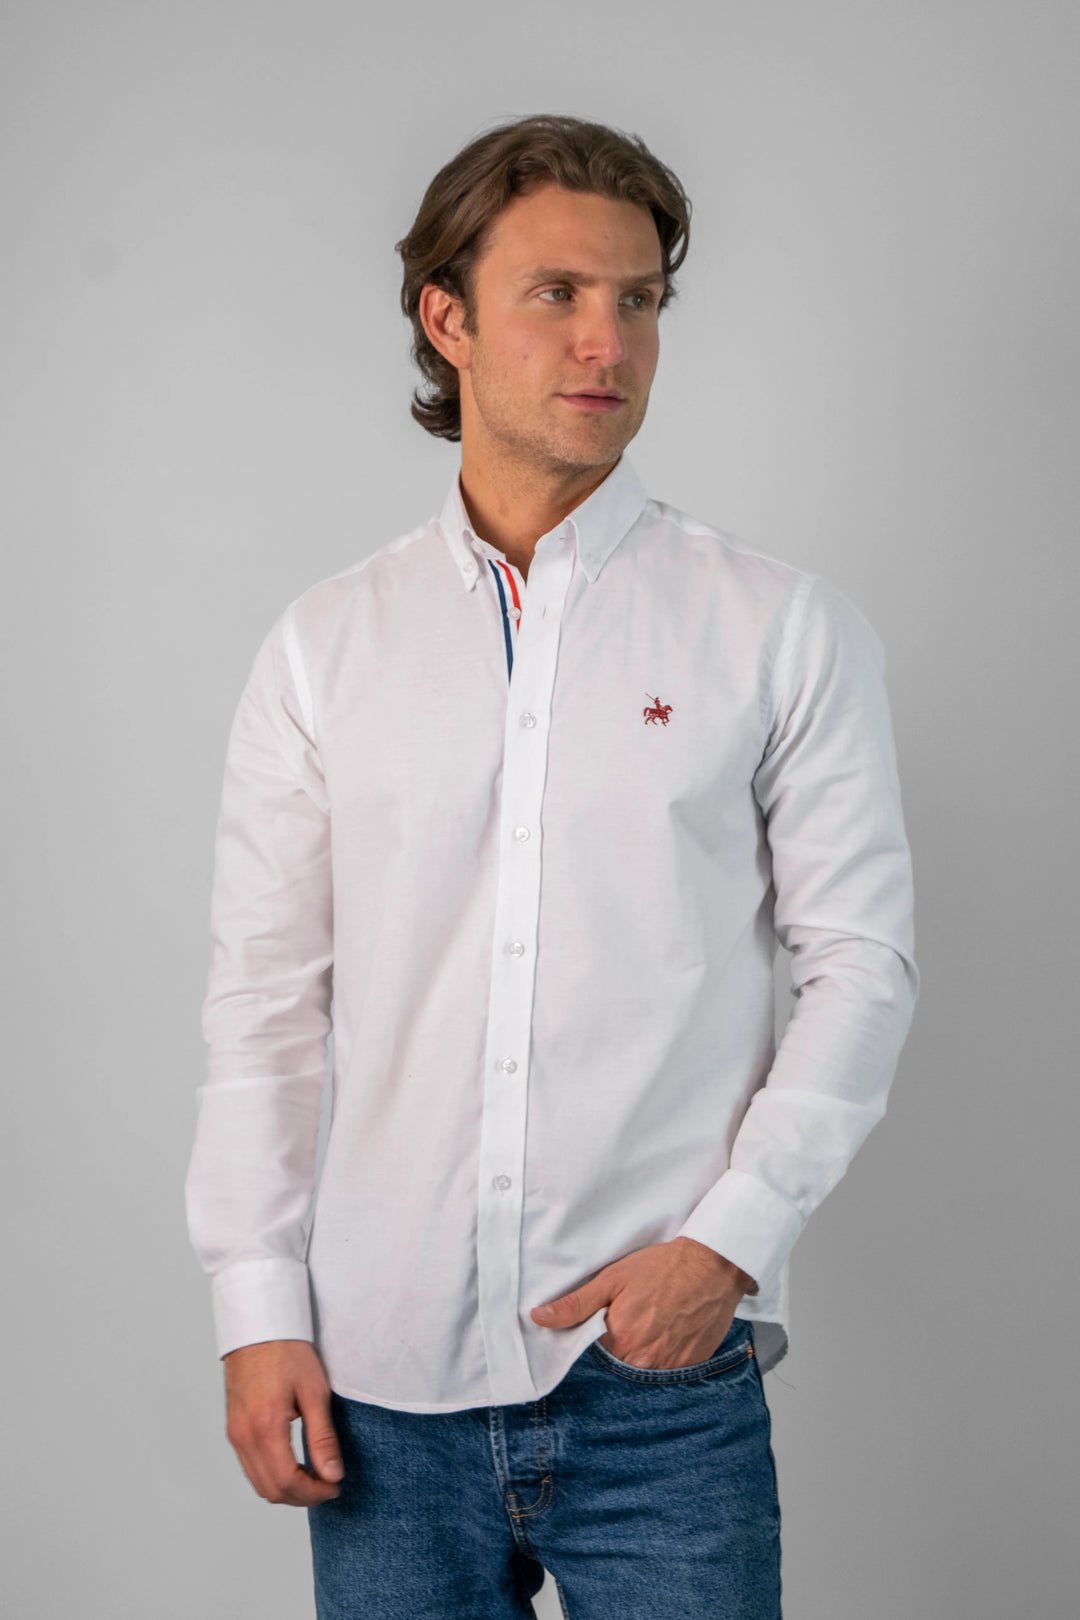 Modelo masculino vistiendo la camisa blanca France. La camisa se combina con jeans para un look casual.